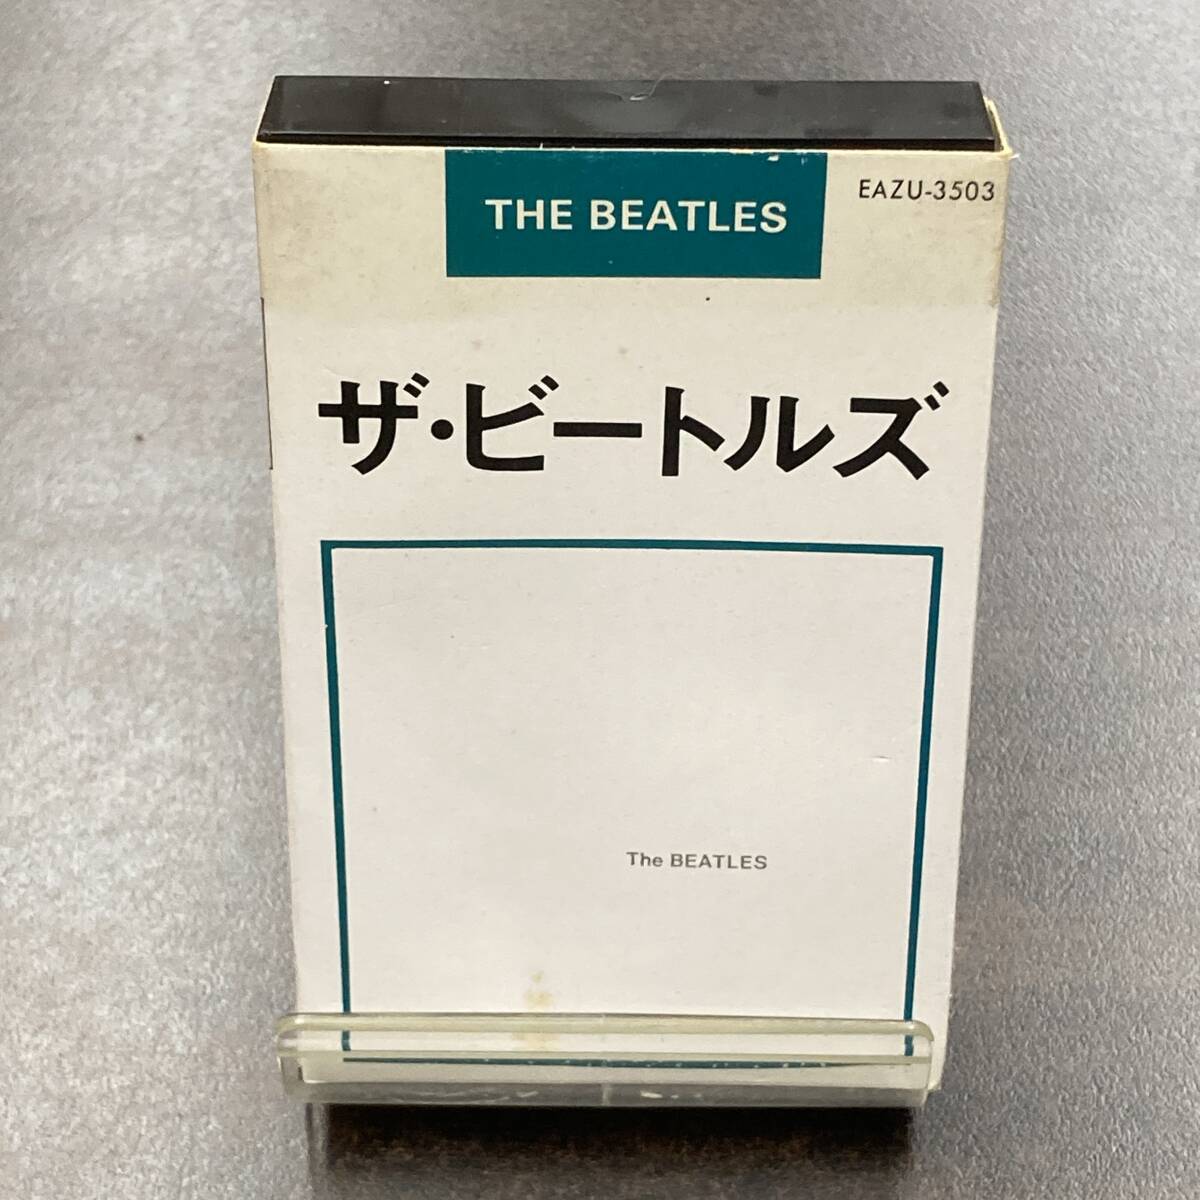 1129M The * Beatles The * Beatles THE BEATLES cassette tape / THE BEATLES Cassette Tape